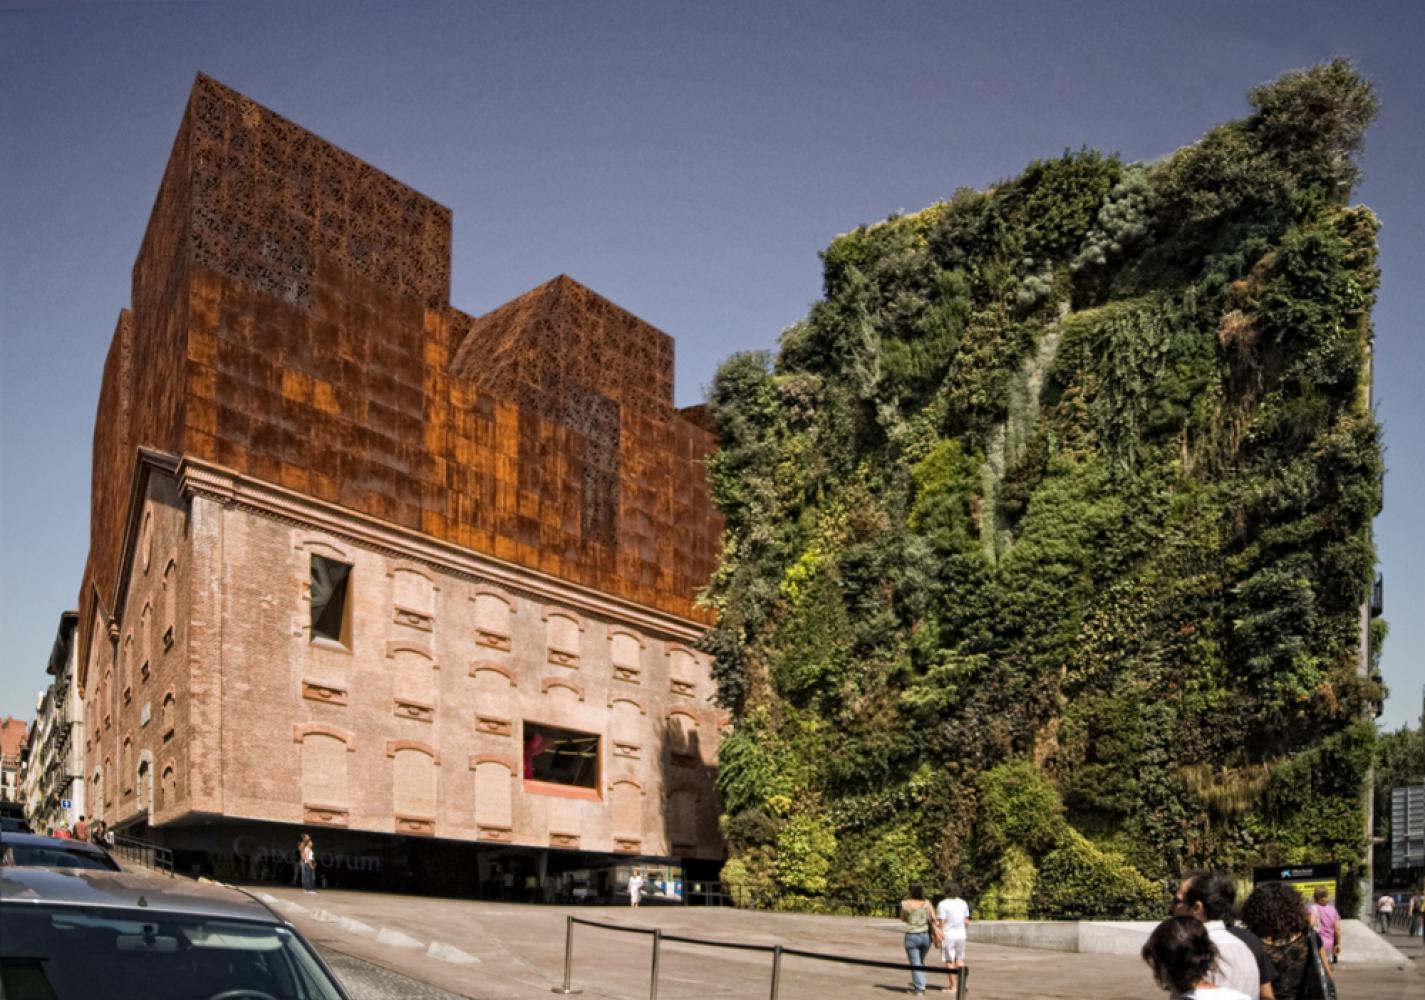 Museen müssen grüner werden: Das Ausstellungshaus CaixaForum Madrid mit einem vertikal an der Hauswand gepflanzten Garten von Patrick Blanc